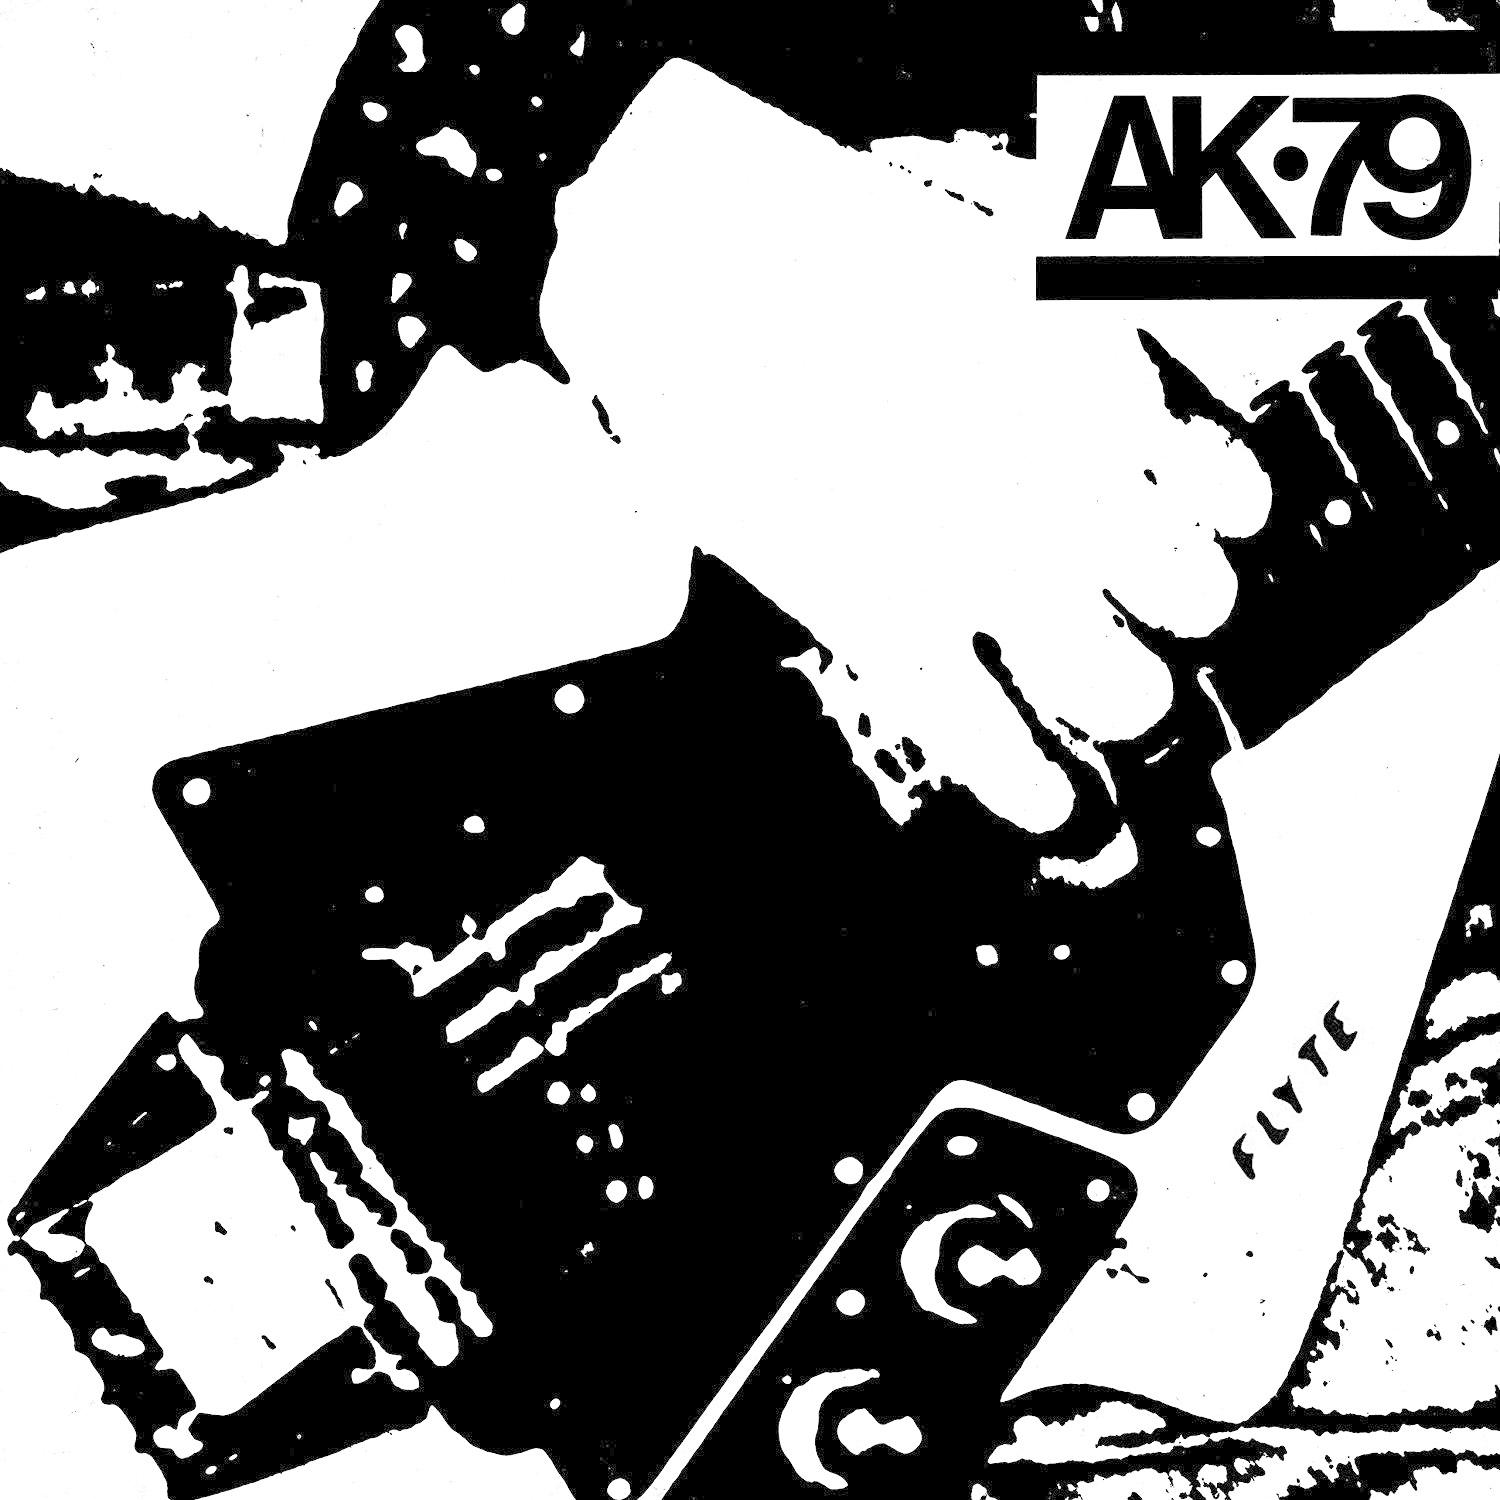 VARIOUS - Ak79 - (Vinyl)